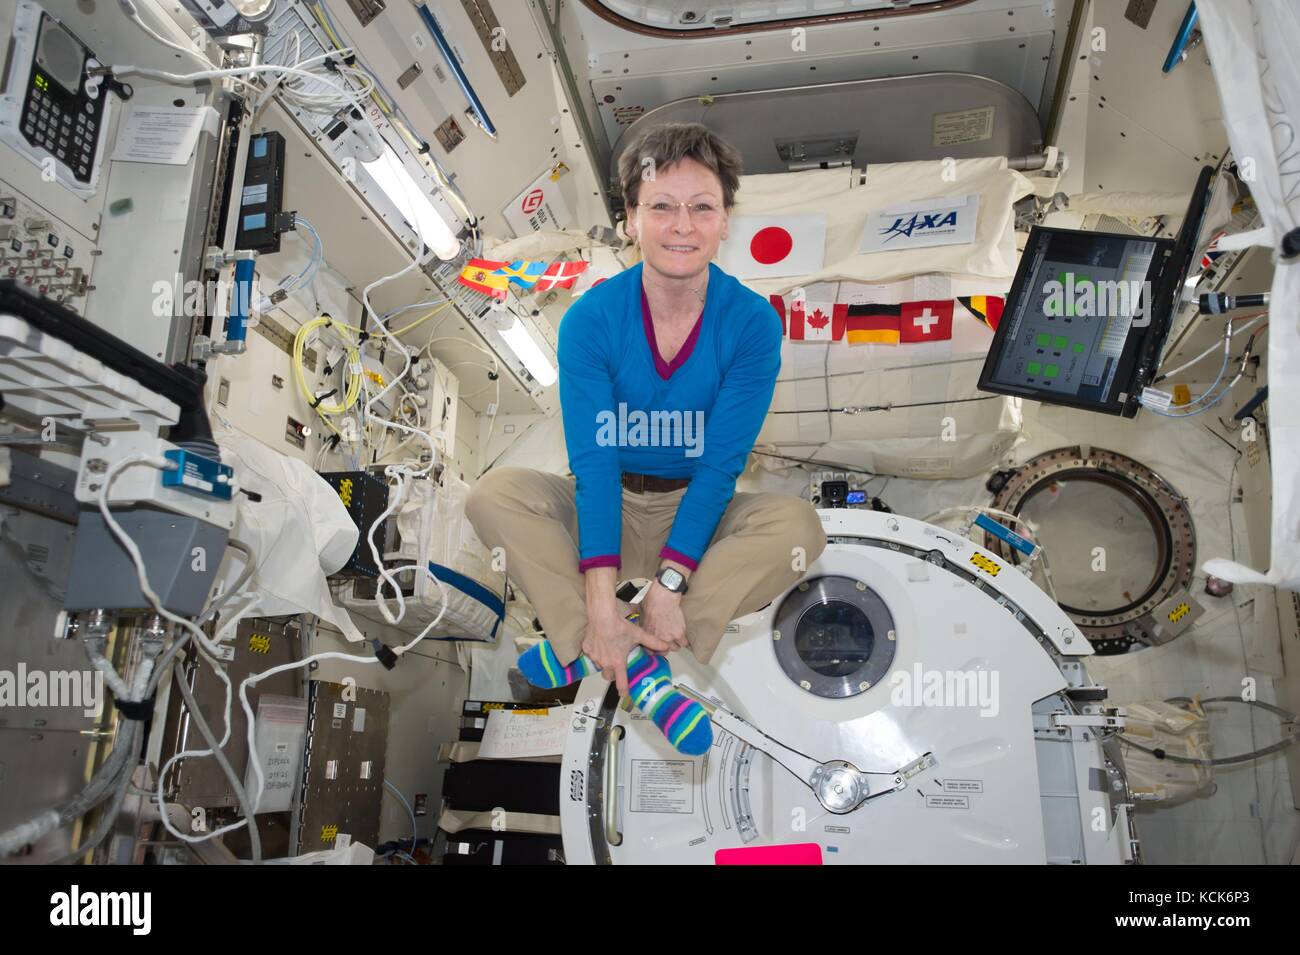 La Nasa stazione spaziale internazionale expedition 51 il primo membro di equipaggio astronauta americano Peggy Whitson galleggianti all'interno del giapponese Kibo laboratory modulo giugno 22, 2017 in orbita intorno alla terra. (Foto di foto nasa via planetpix) Foto Stock